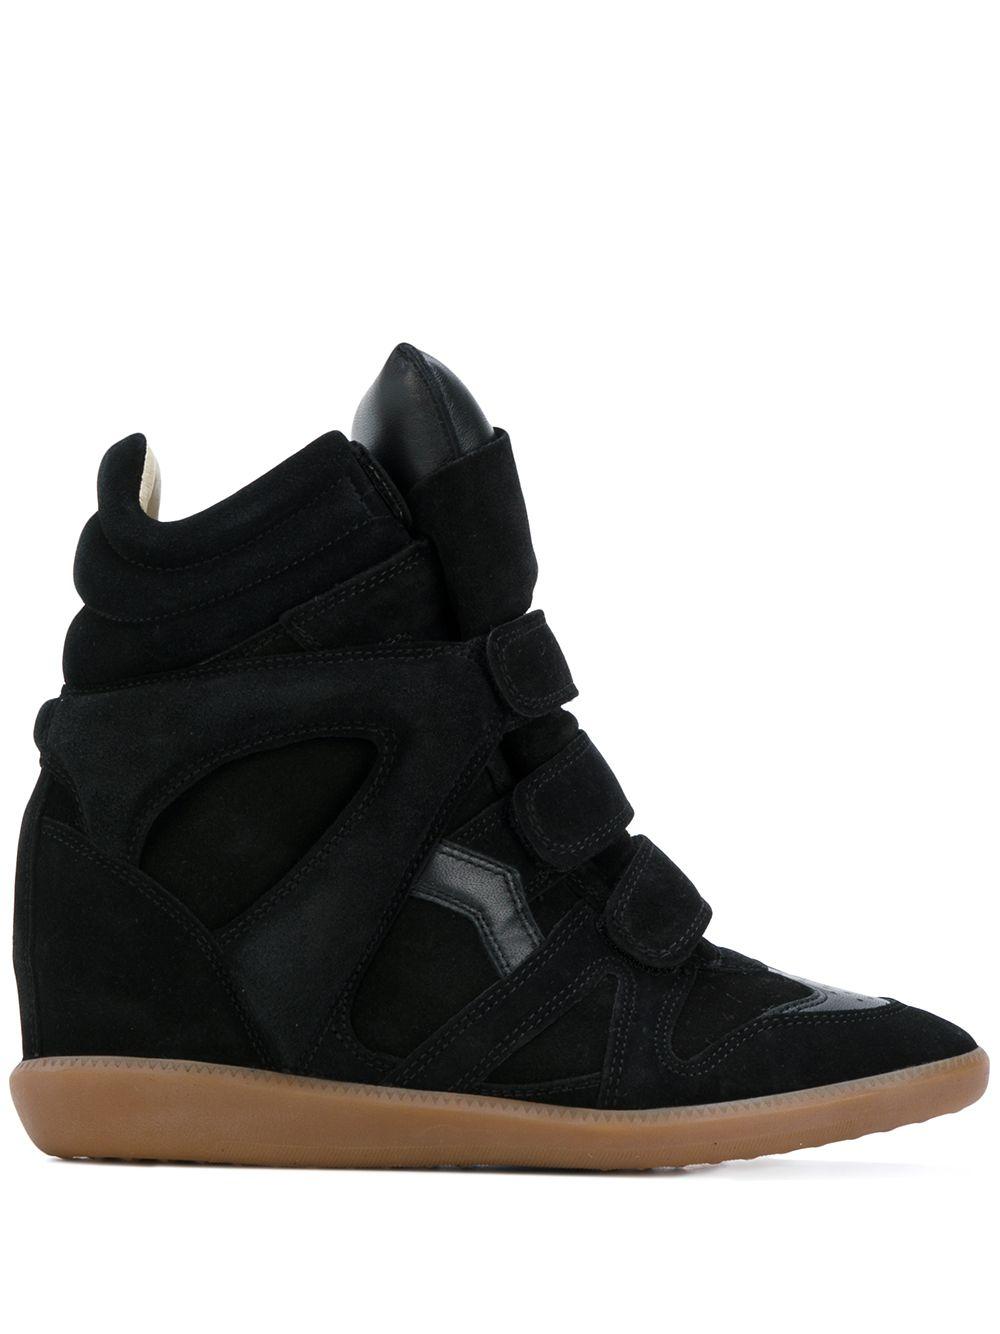 Isabel Marant Black Suede Bekett Wedge Sneakers - Save 50% | Lyst